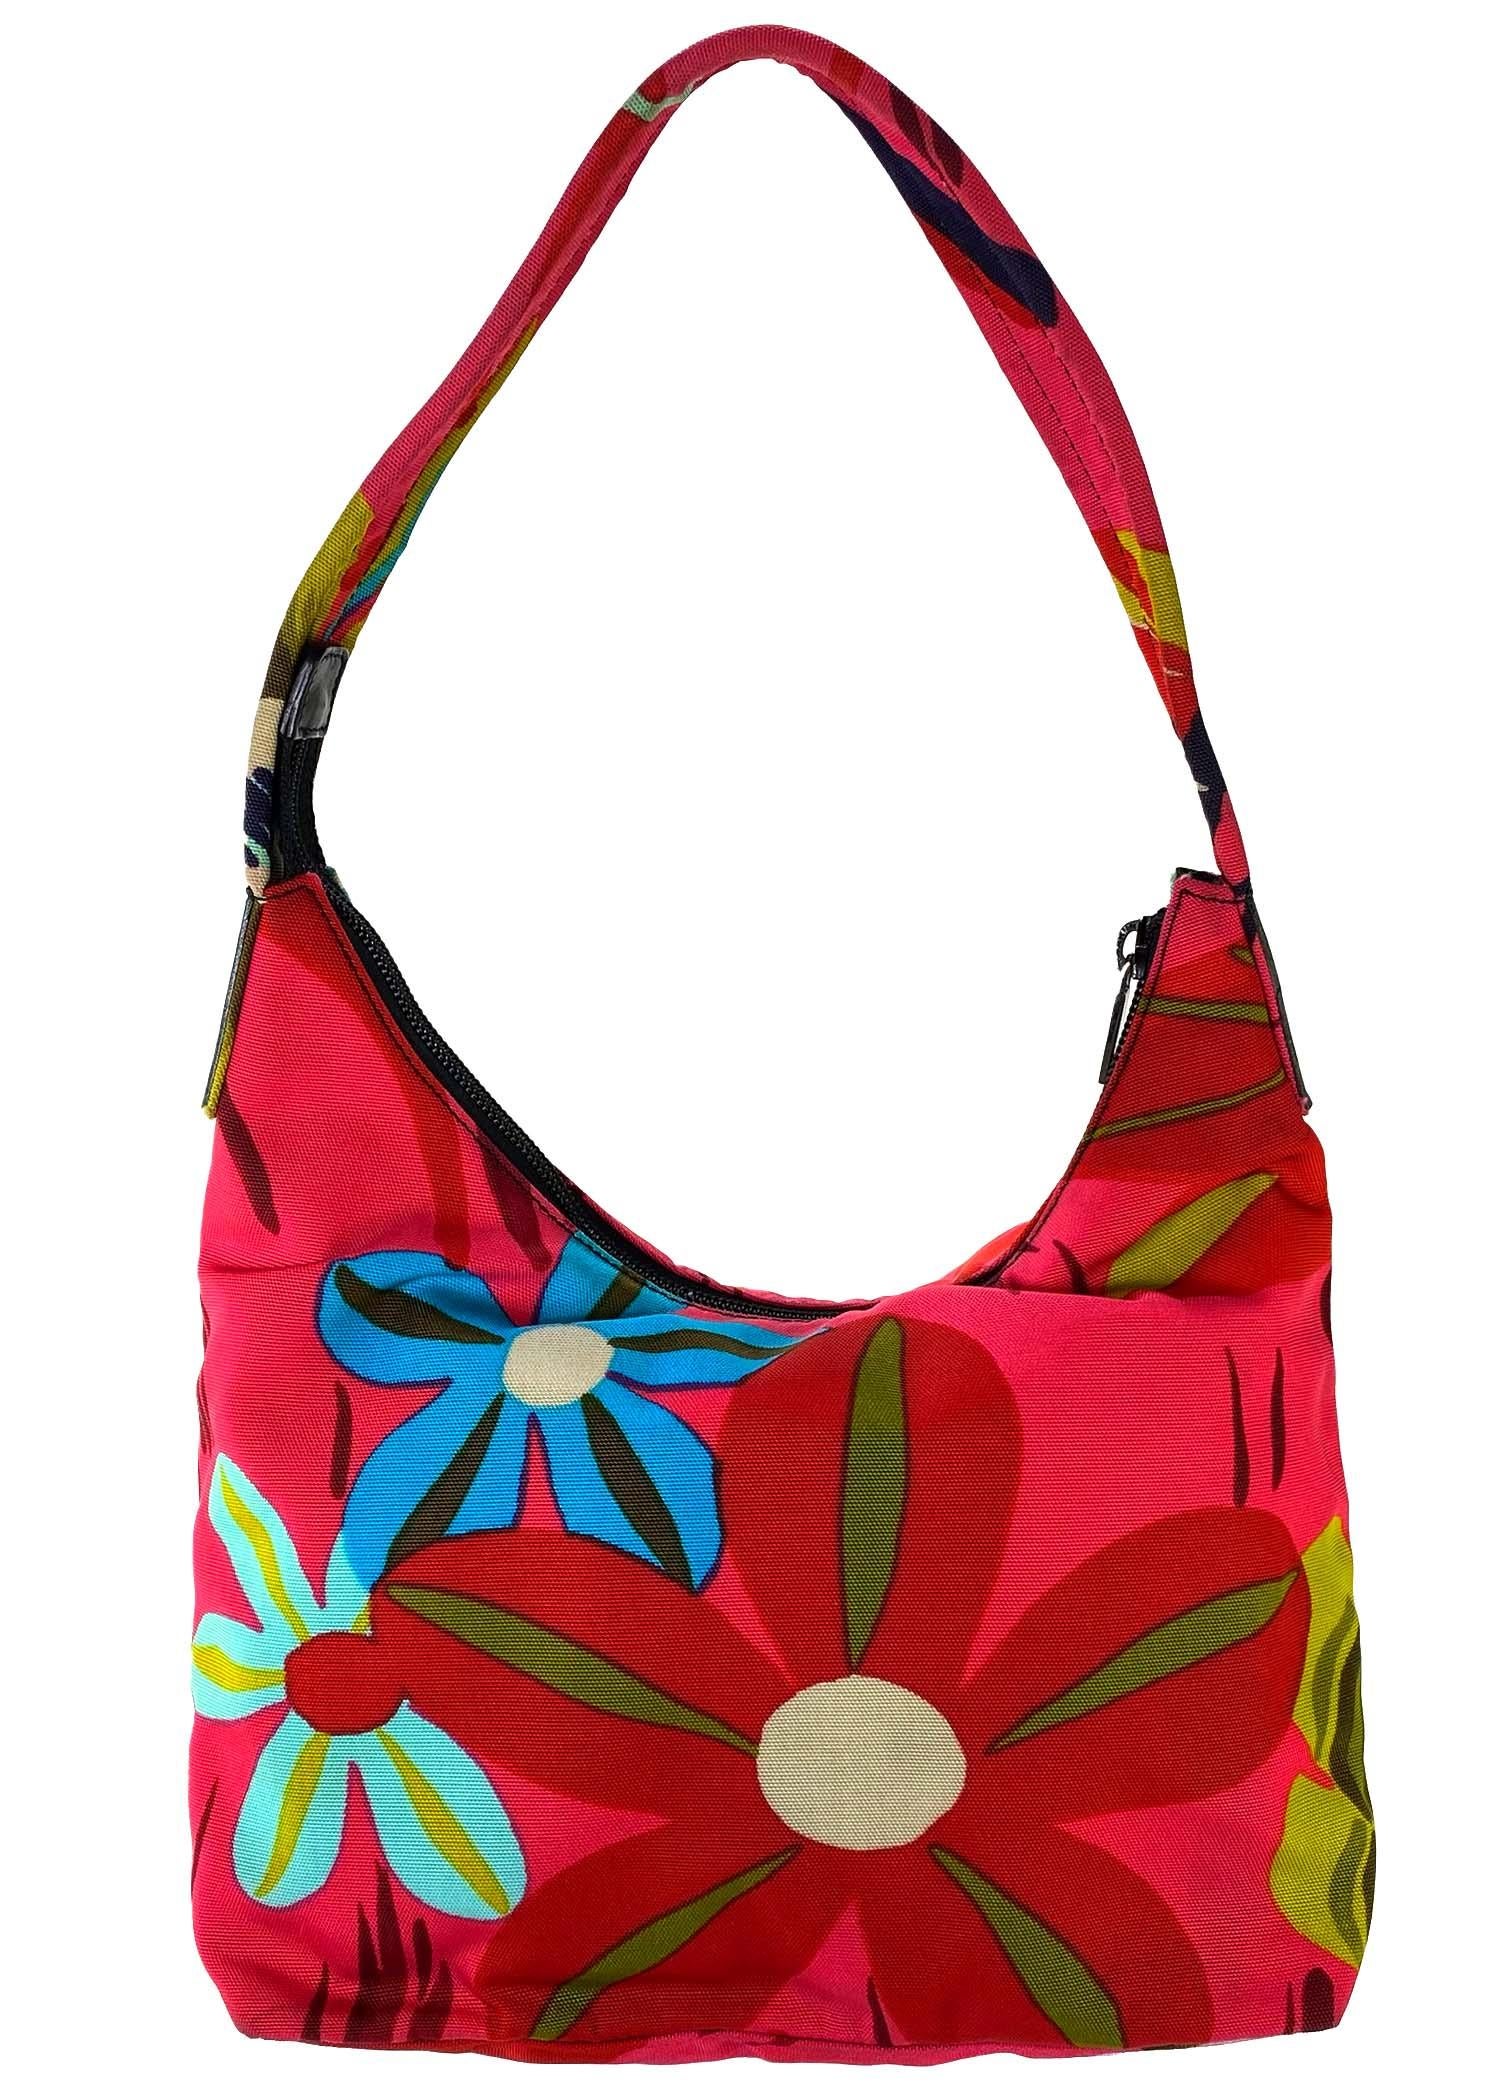 floral shoulder bag